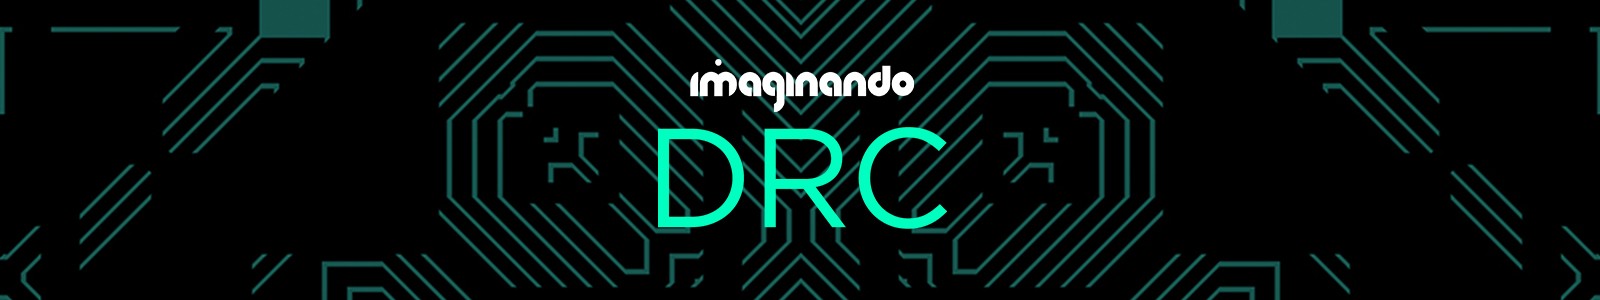 DRC by Imaginando